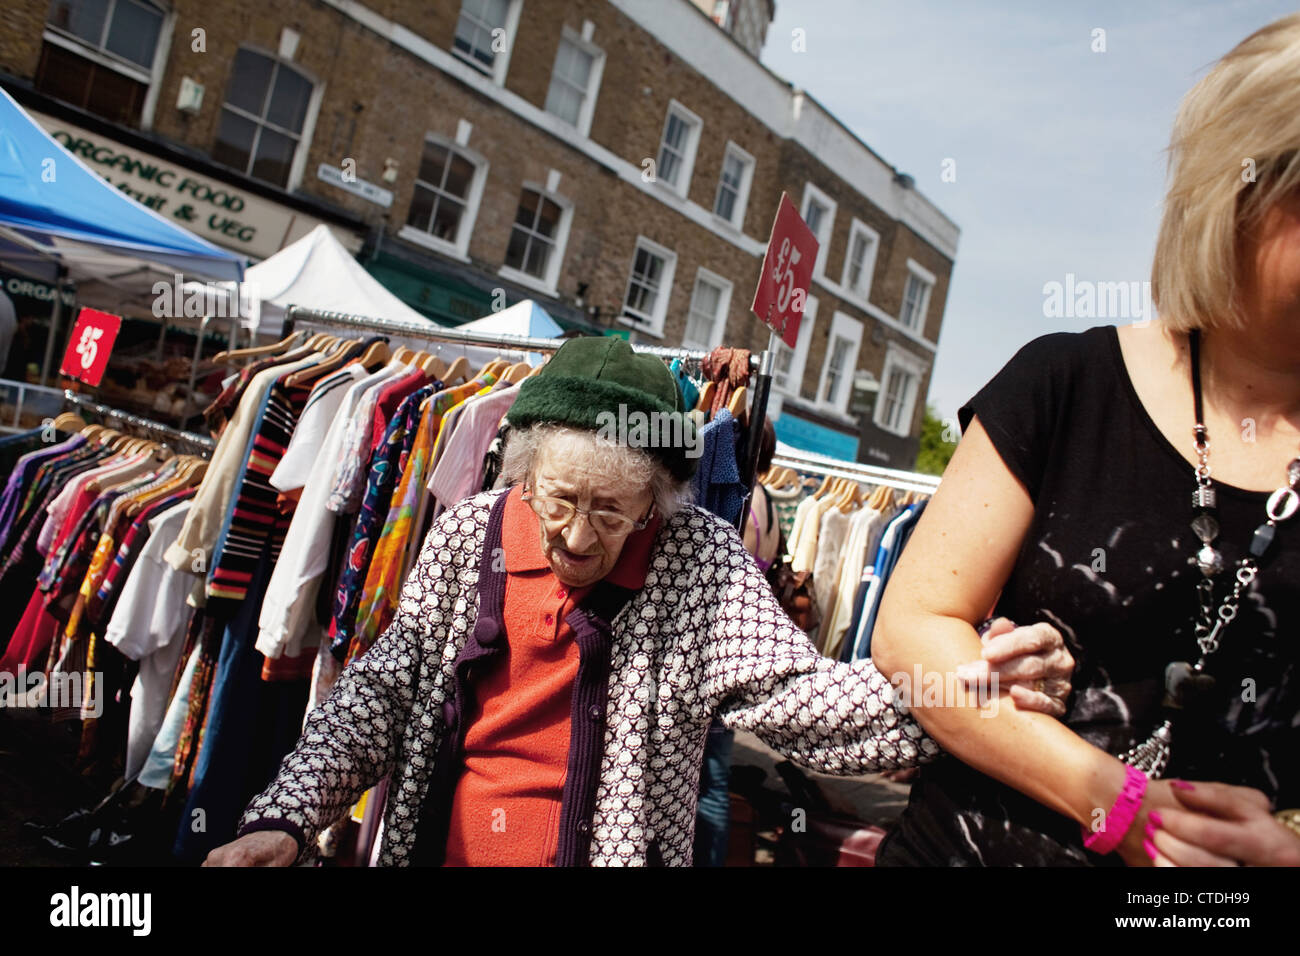 Eine alte Frau ist durch den quirligen Markt geholfen. Broadway Market in Hackney, East London ist ein sehr beliebter Straßenmarkt geworden. Stockfoto